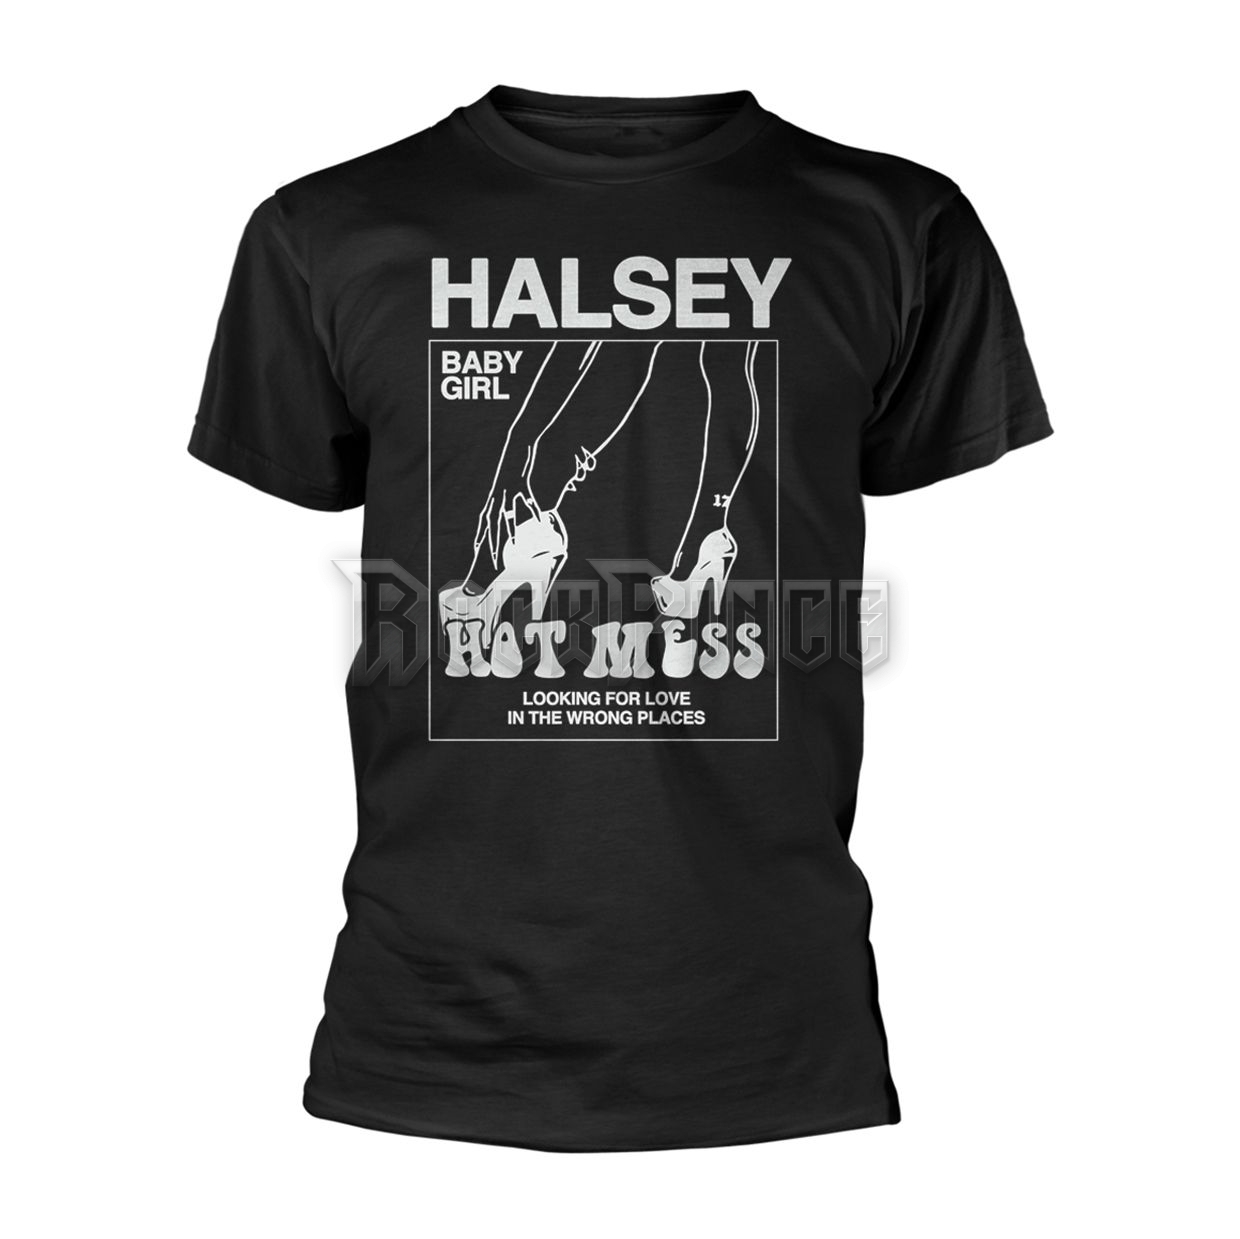 HALSEY - HOT MESS - RTHAL001